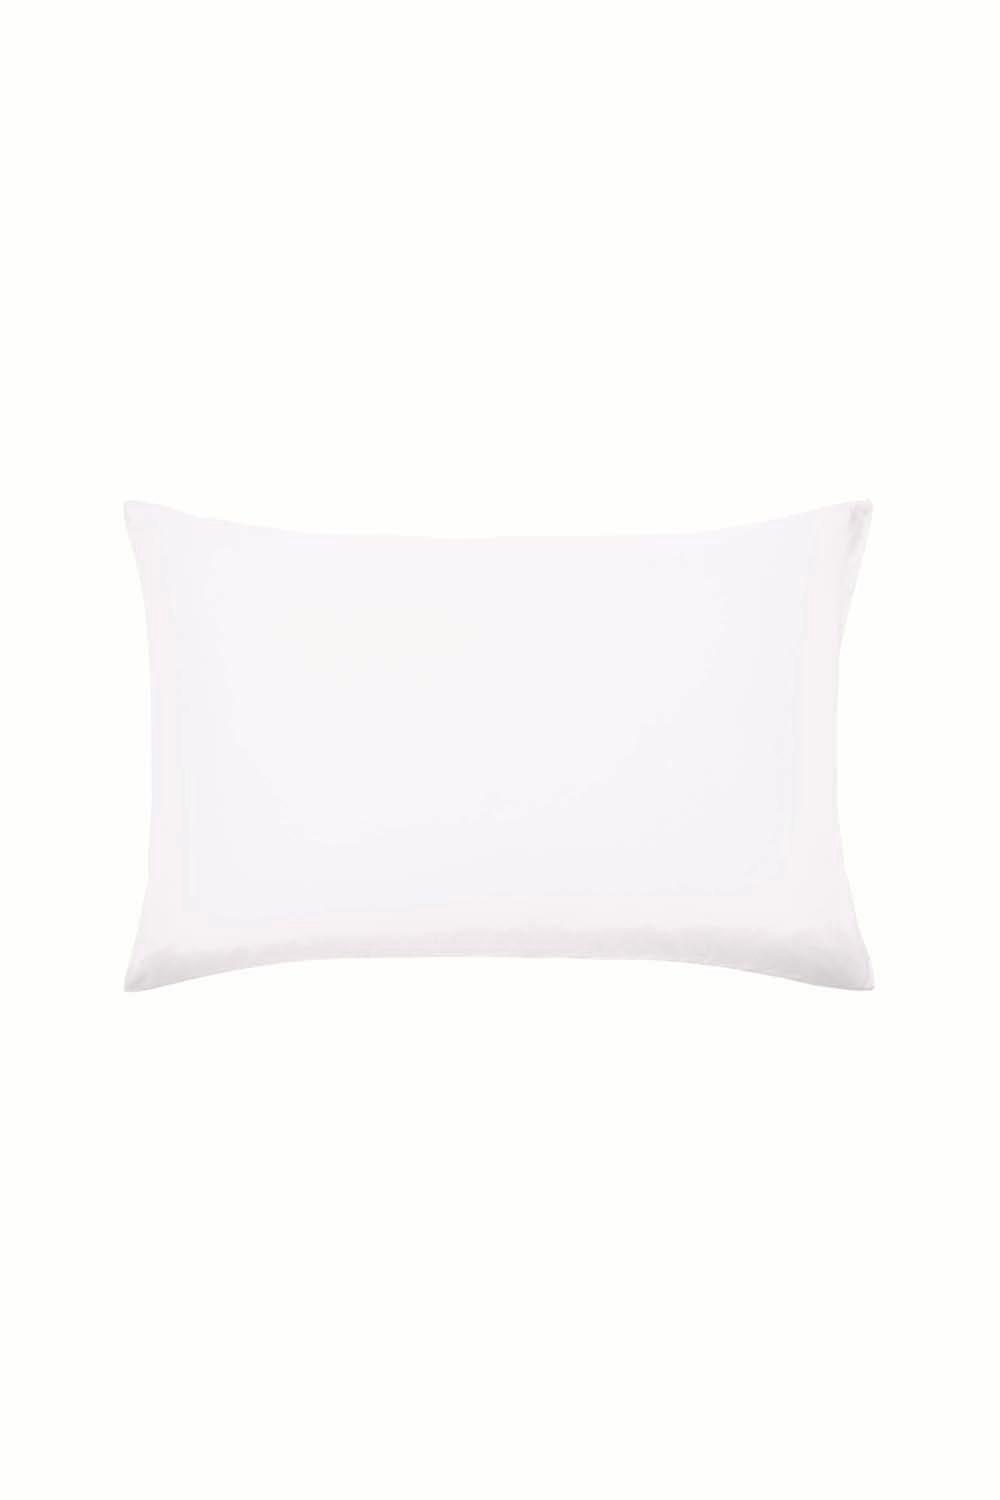 'Murmur 1000TC Plain Dye' Egyptian Cotton Standard Pillowcase